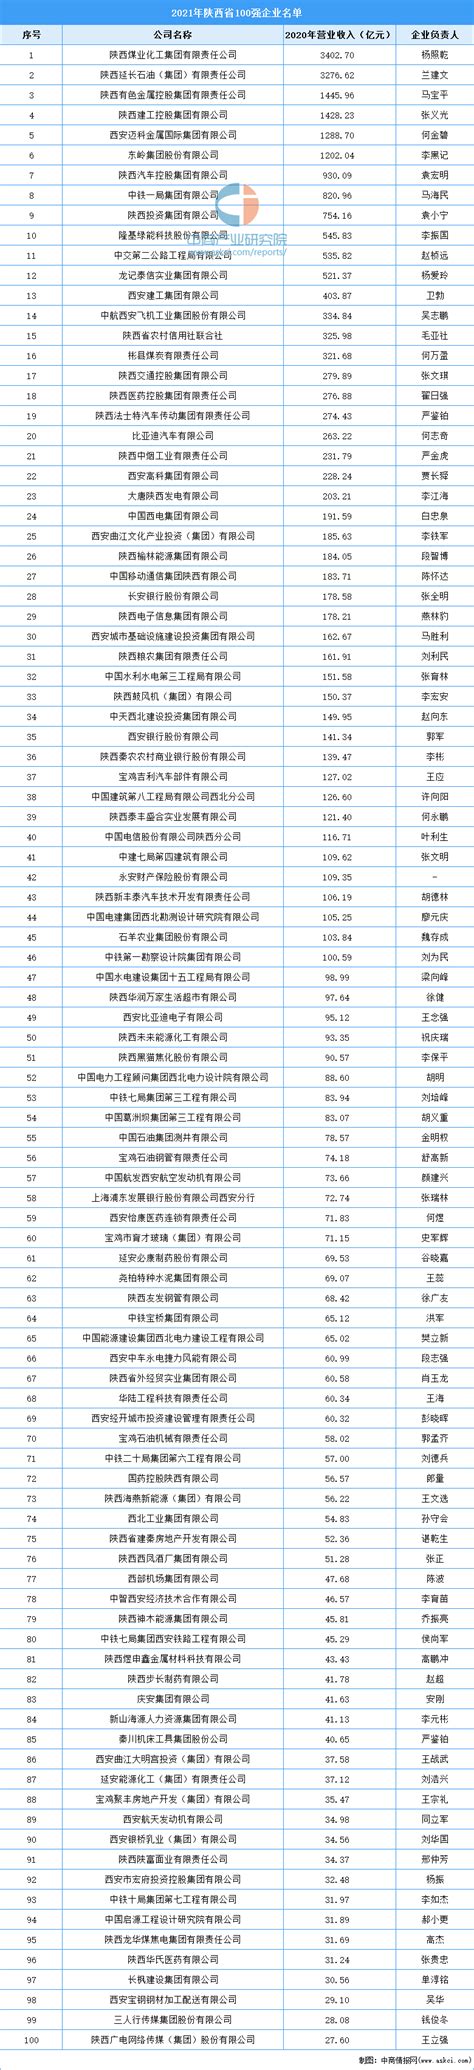 2021年陕西省100强企业榜单（附完整榜单）-排行榜-中商情报网